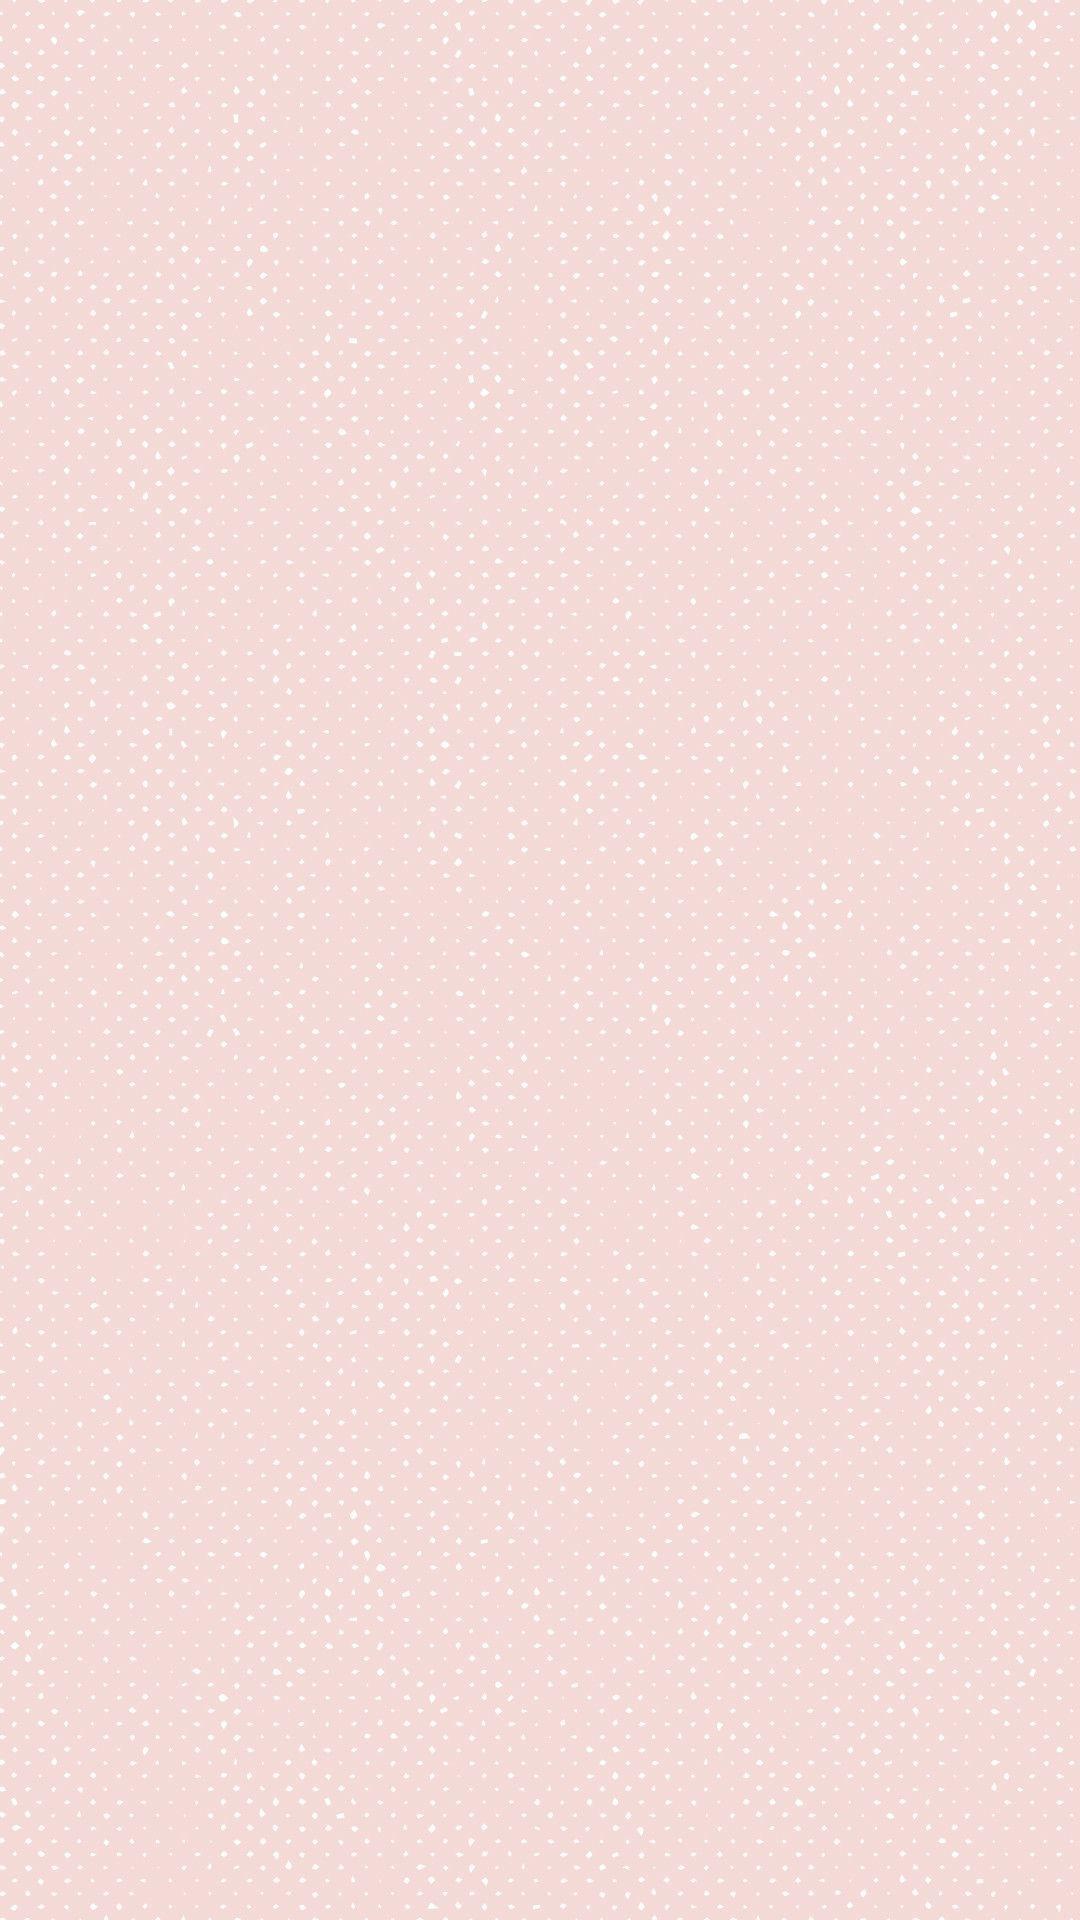 Pale Pink Wallpapers - Top Những Hình Ảnh Đẹp